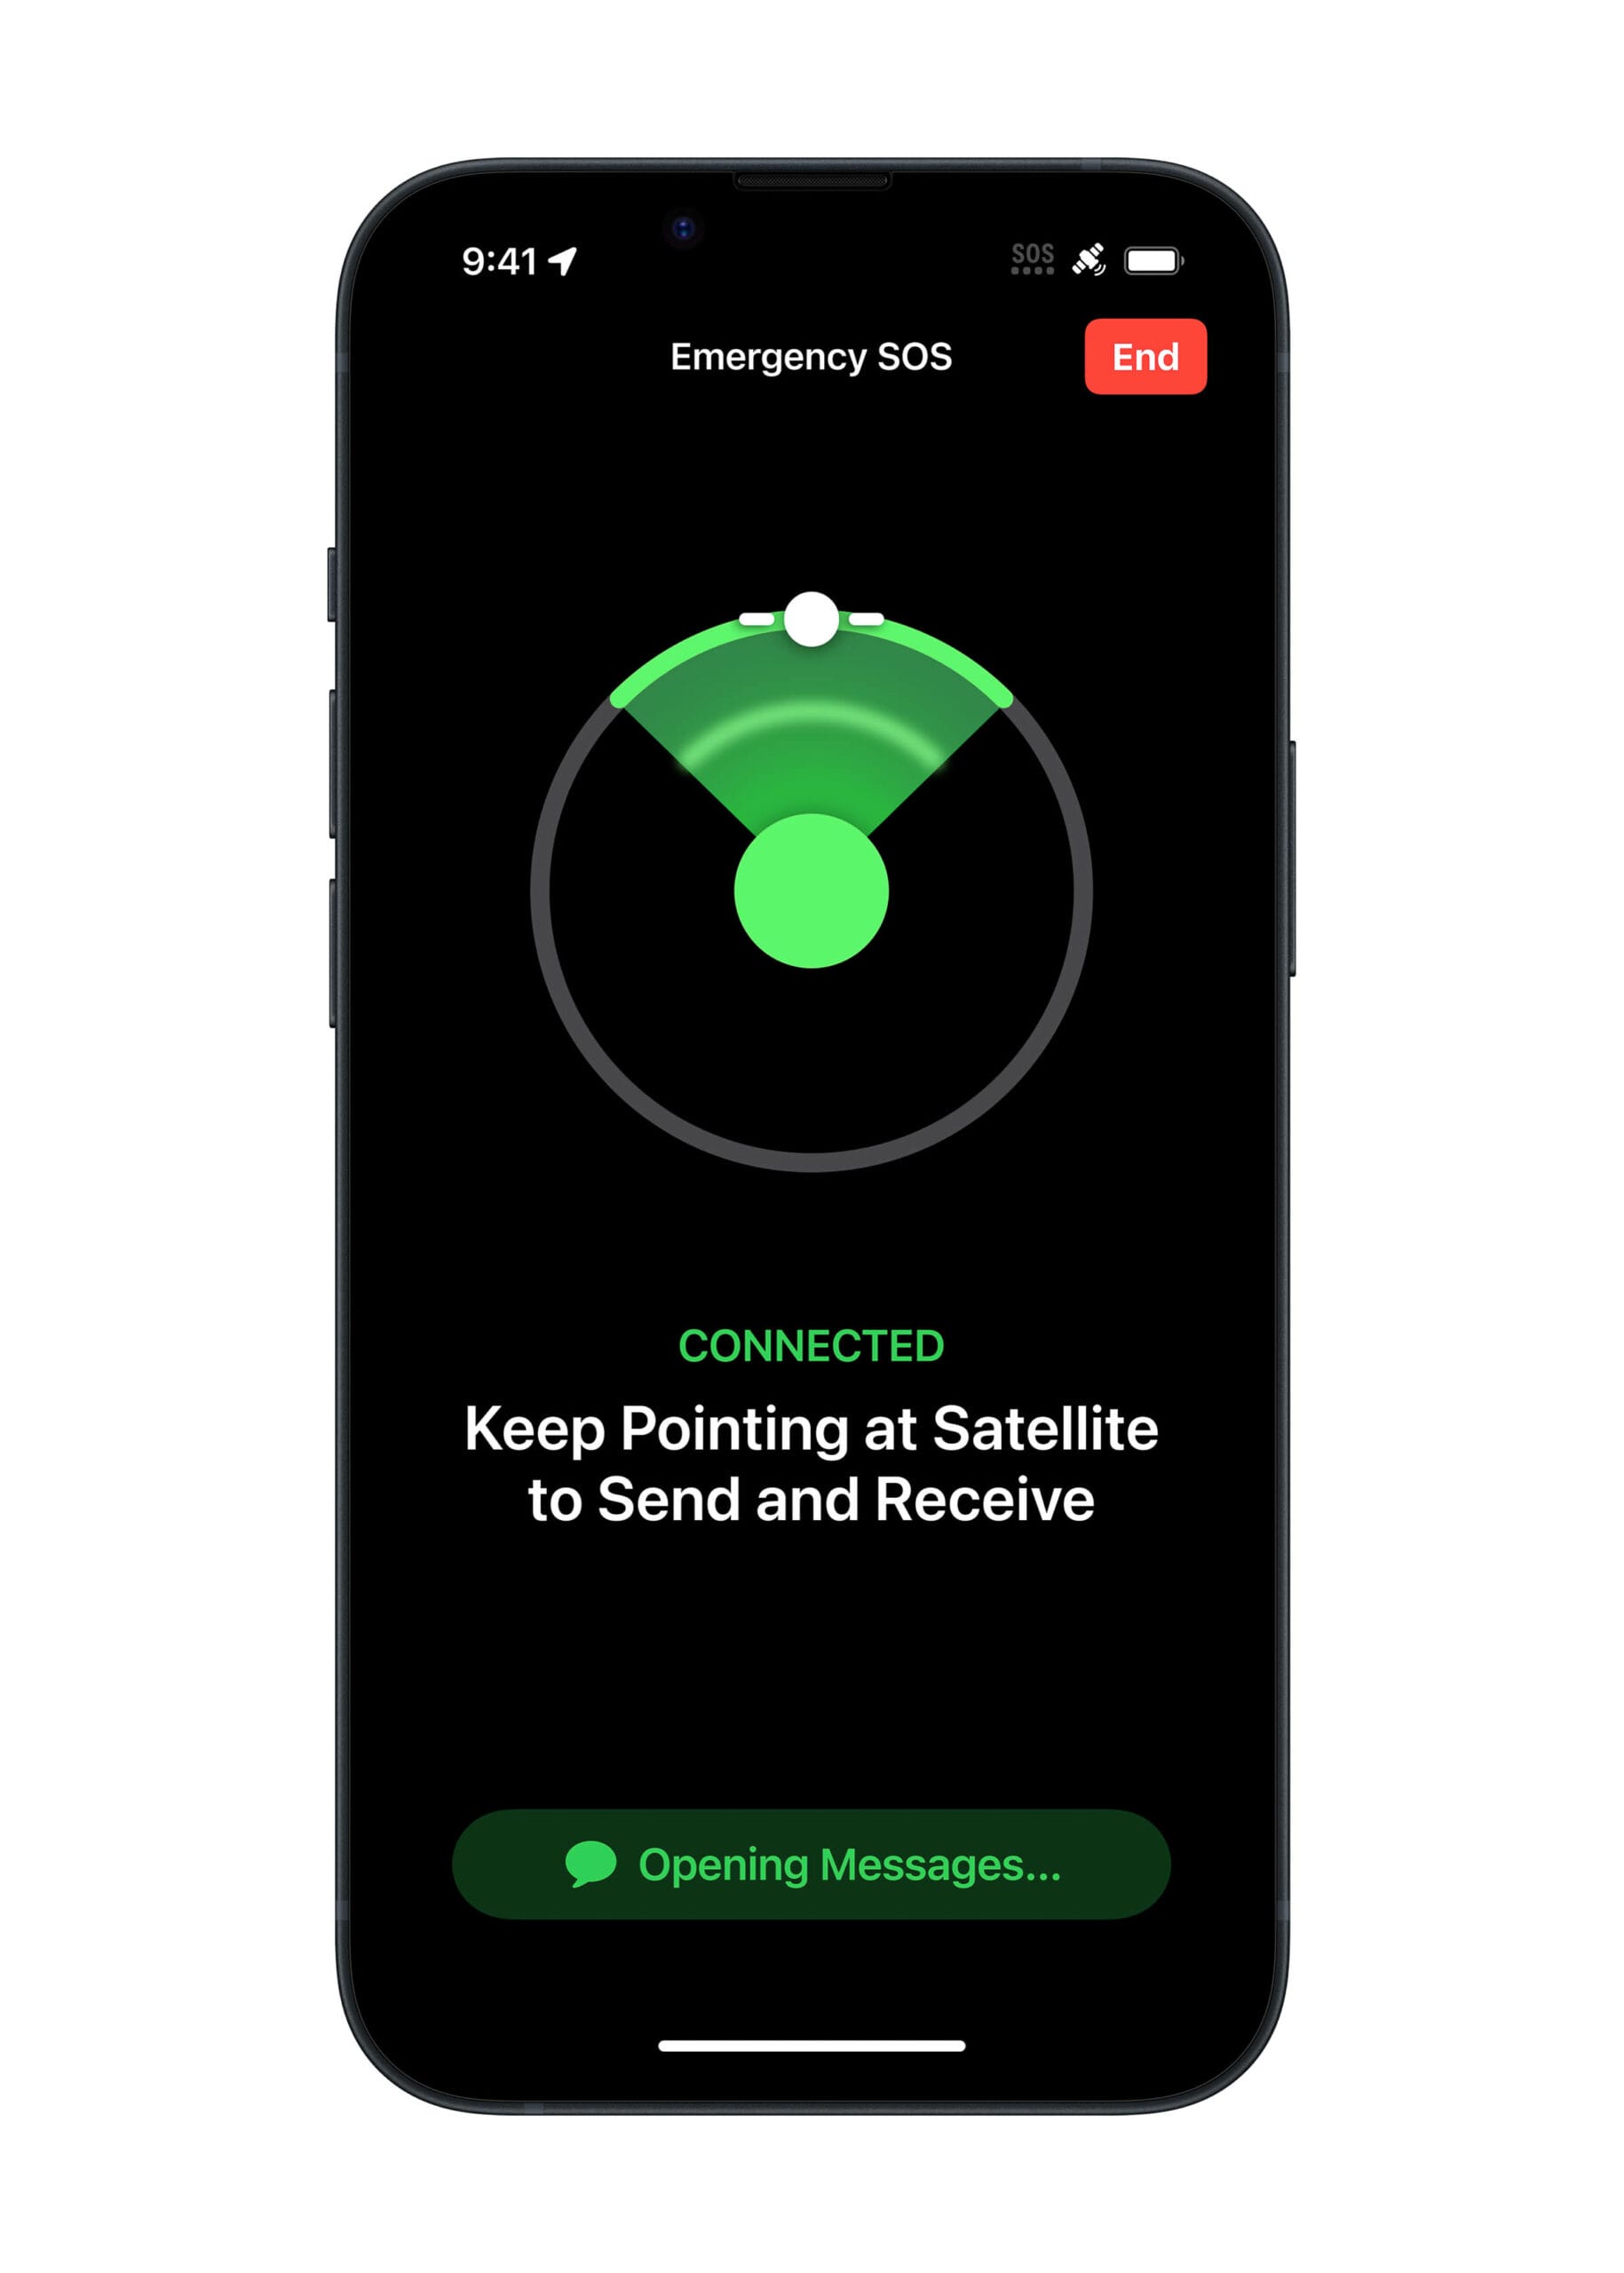 emergency sos via satellite, screenshots, apple,